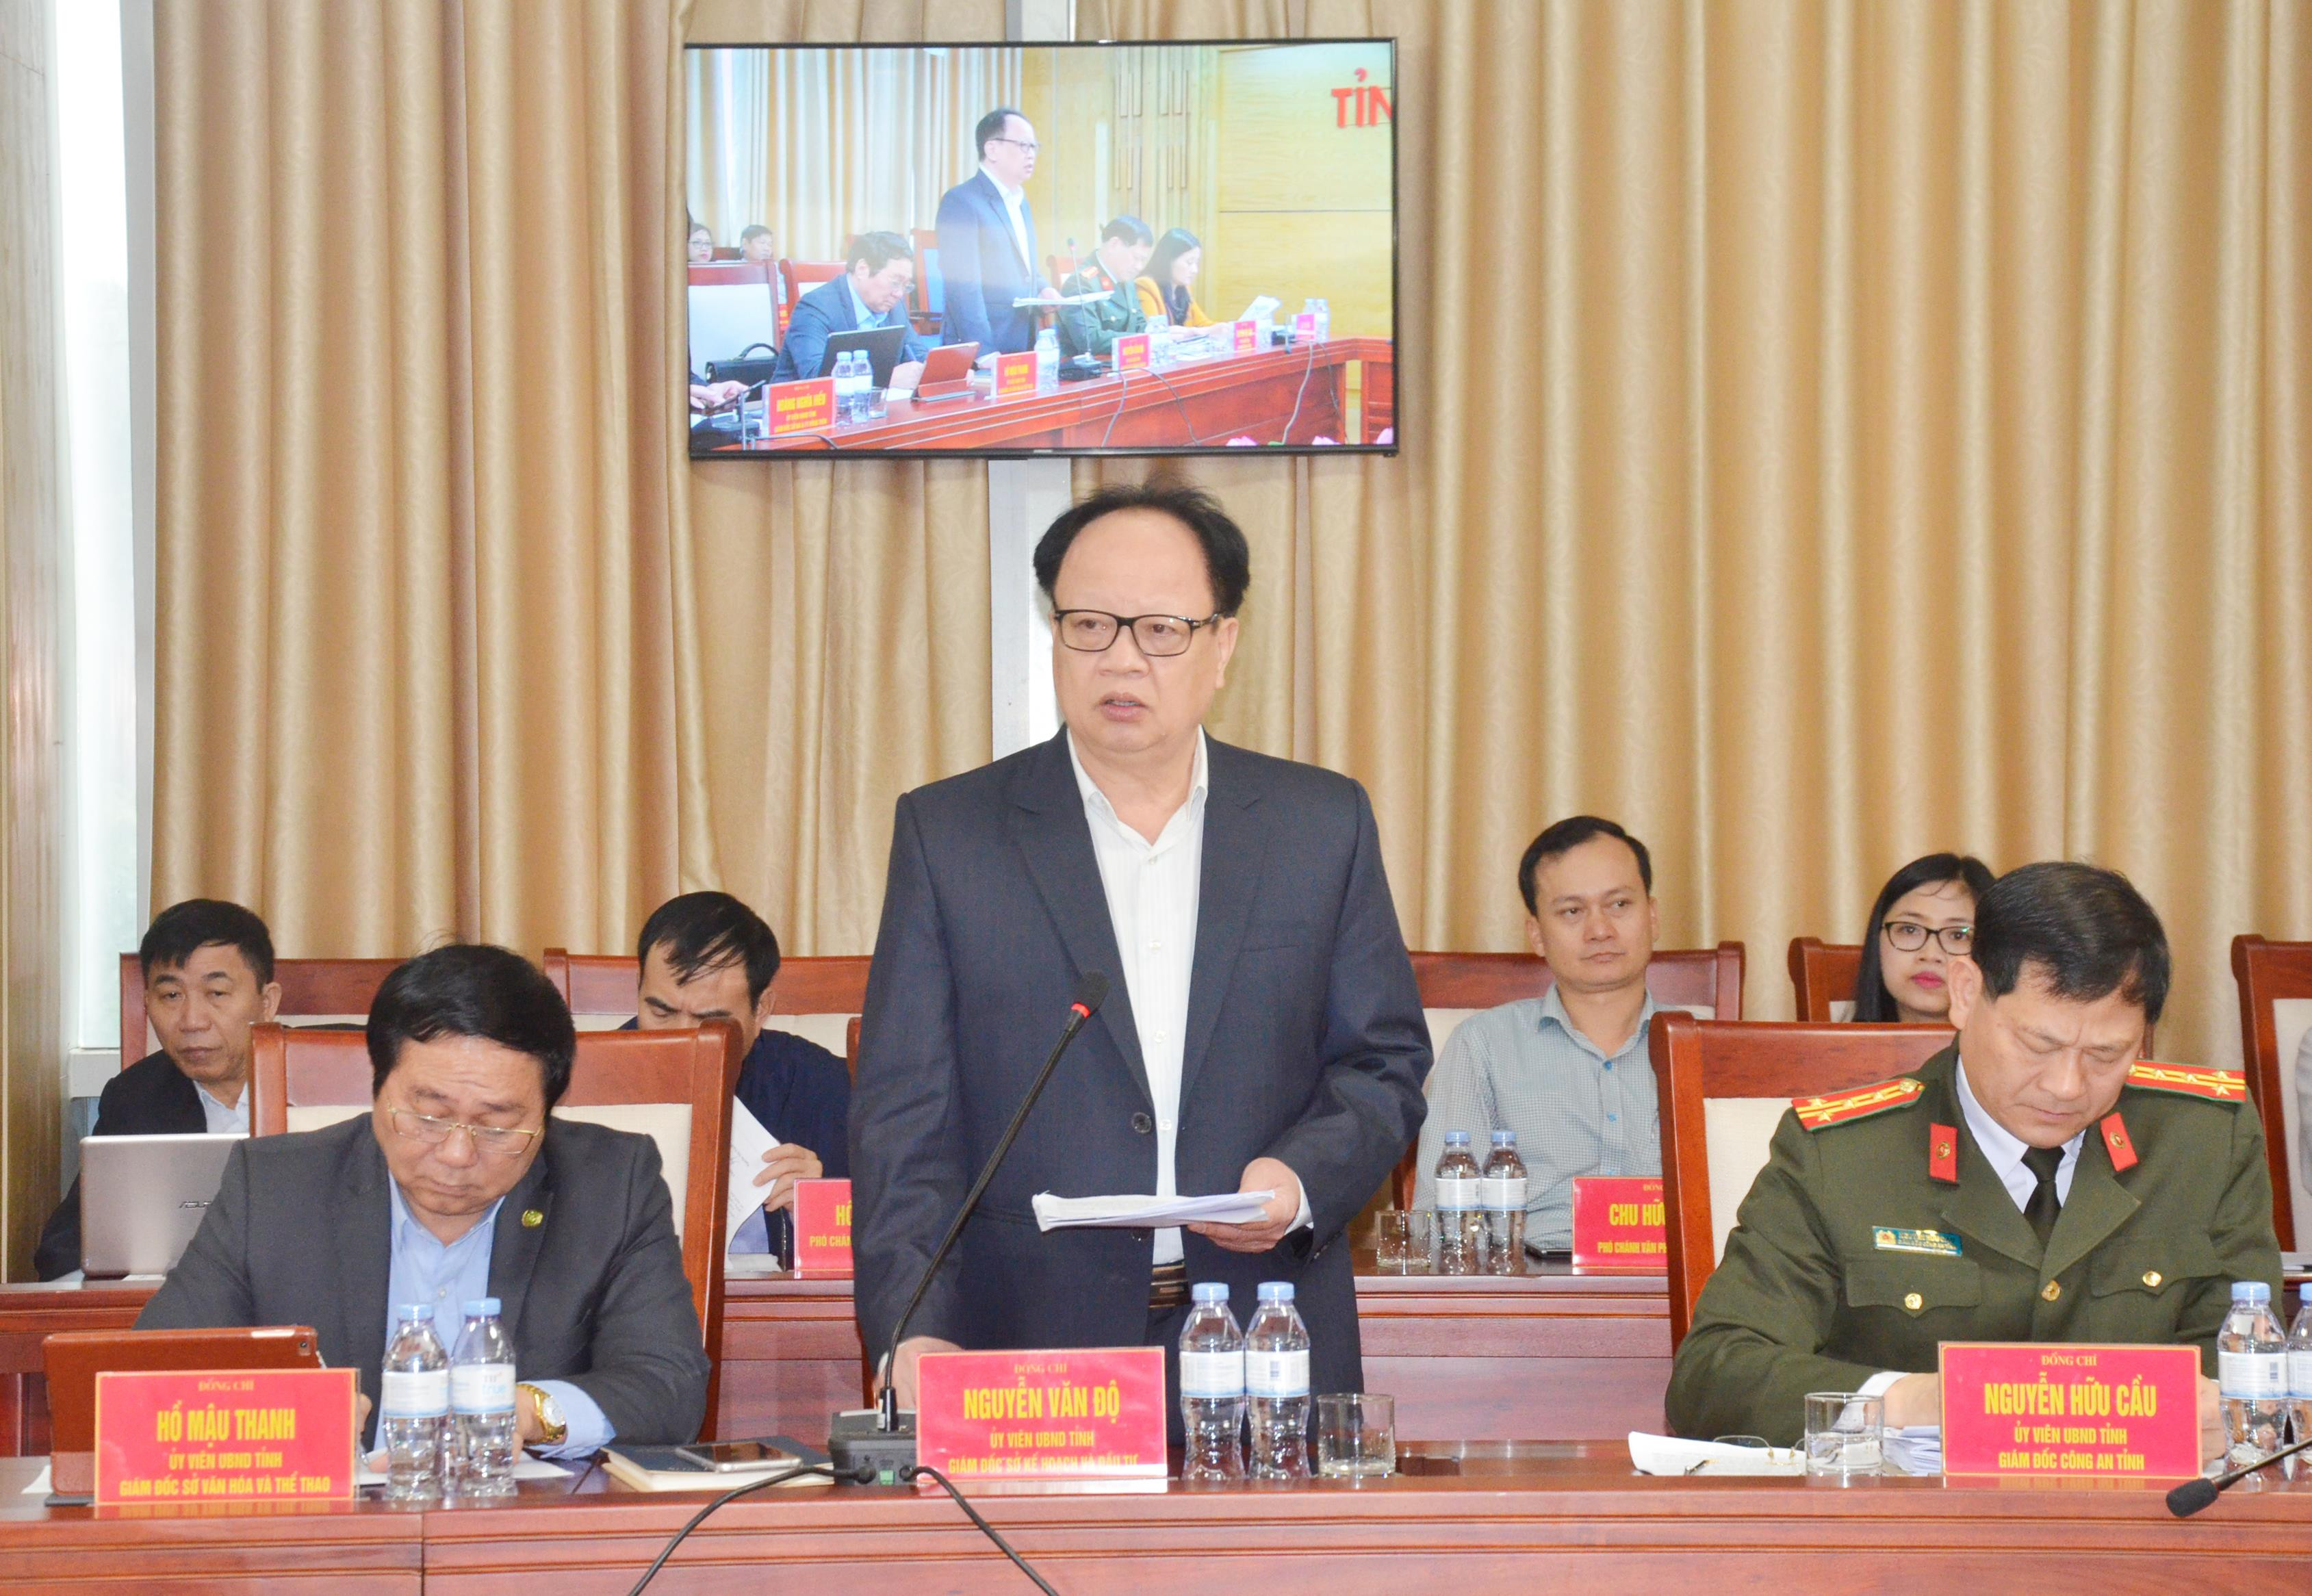 Giám đốc Sở Kế hoạch và Đầu tư Nguyễn Văn Độ phát biểu khai mạc buổi  lễ. Ảnh: Thanh Lê